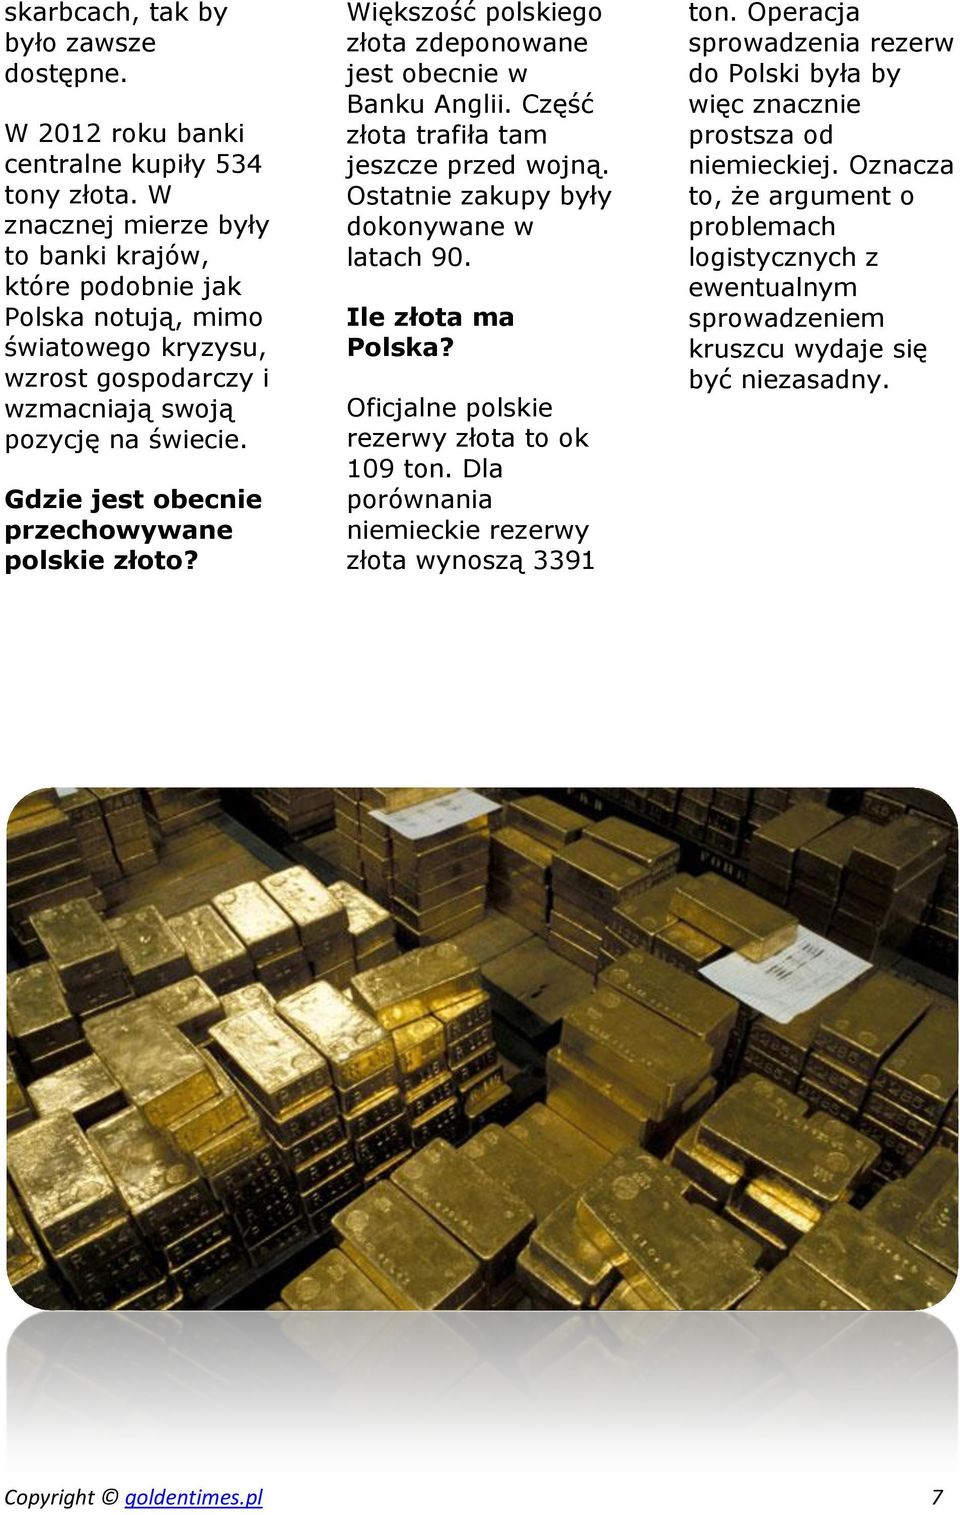 Gdzie jest obecnie przechowywane polskie złoto? Większość polskiego złota zdeponowane jest obecnie w Banku Anglii. Część złota trafiła tam jeszcze przed wojną.